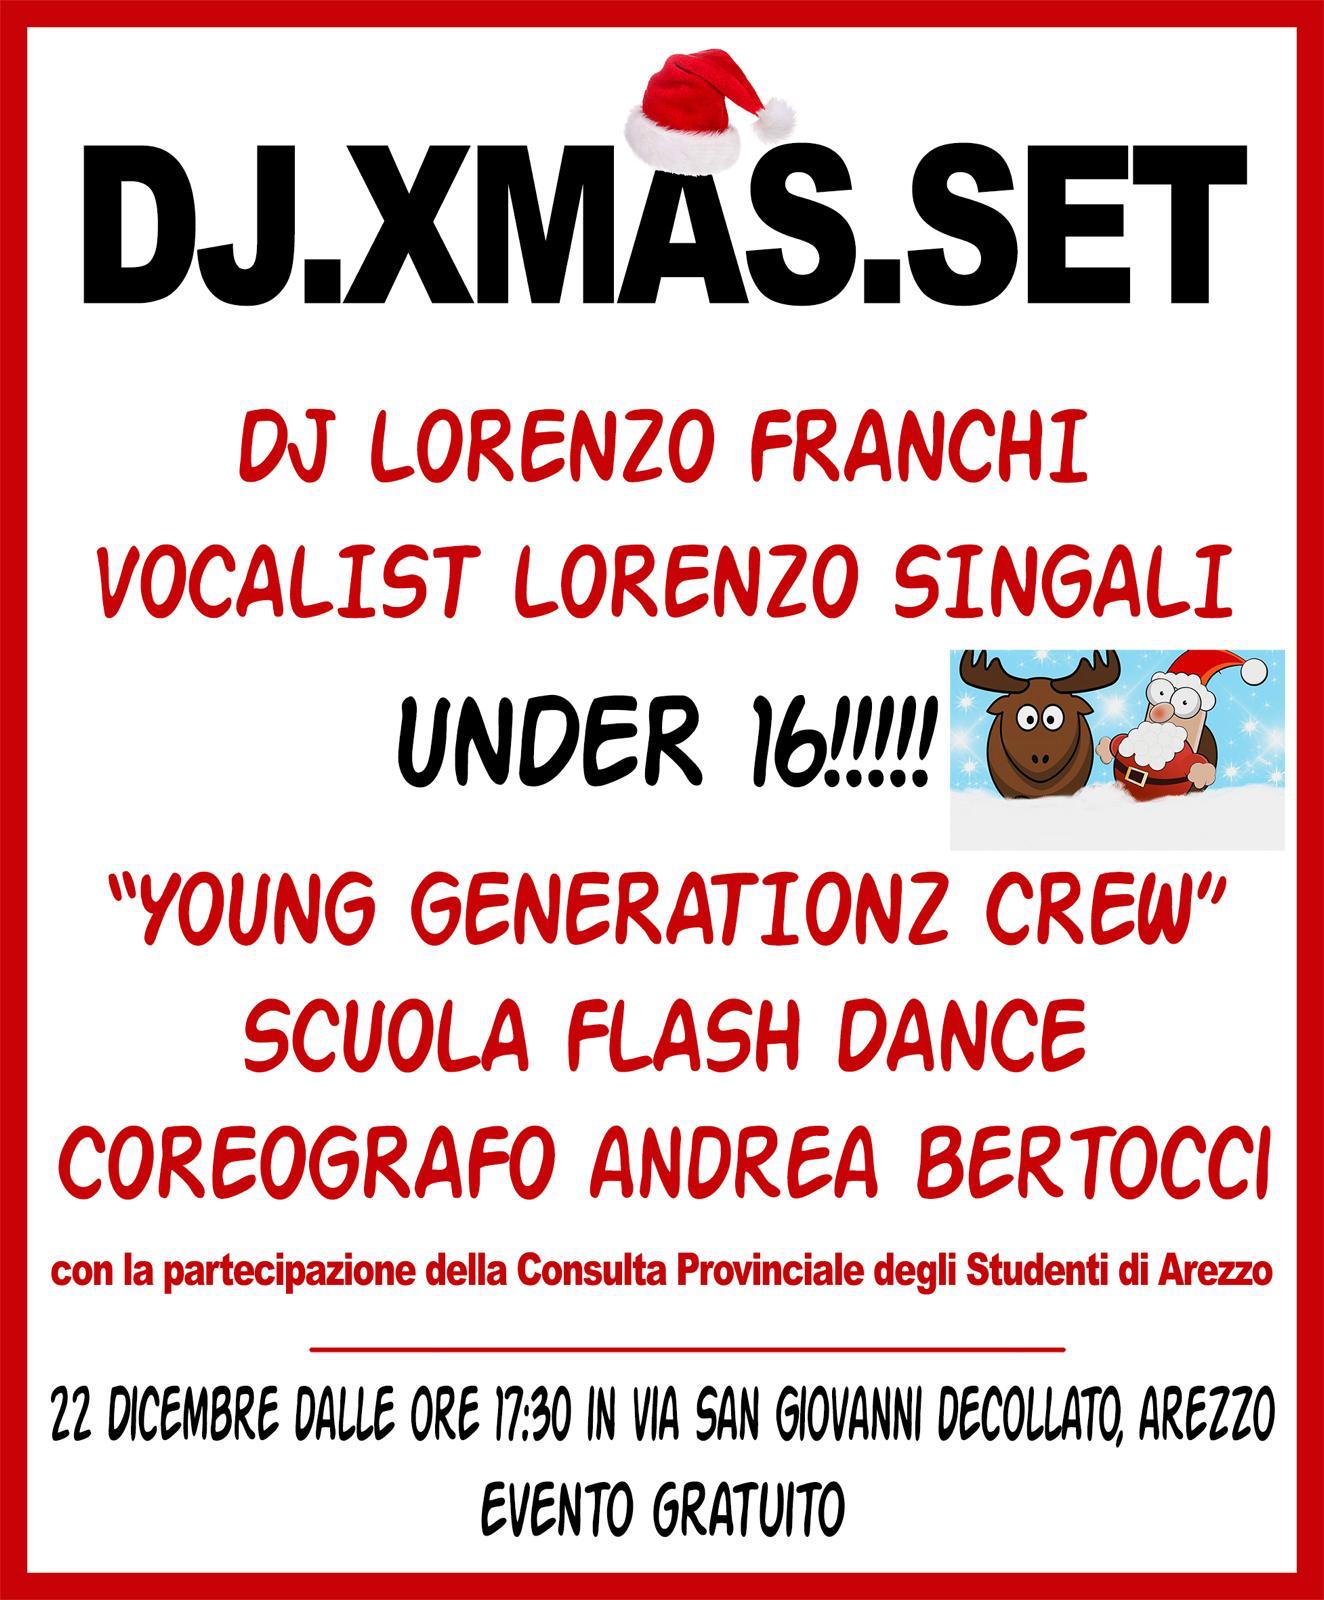 DJ.XMAS.SET di Futuro Aretino e Under Sixteen in via San Giovanni Decollato